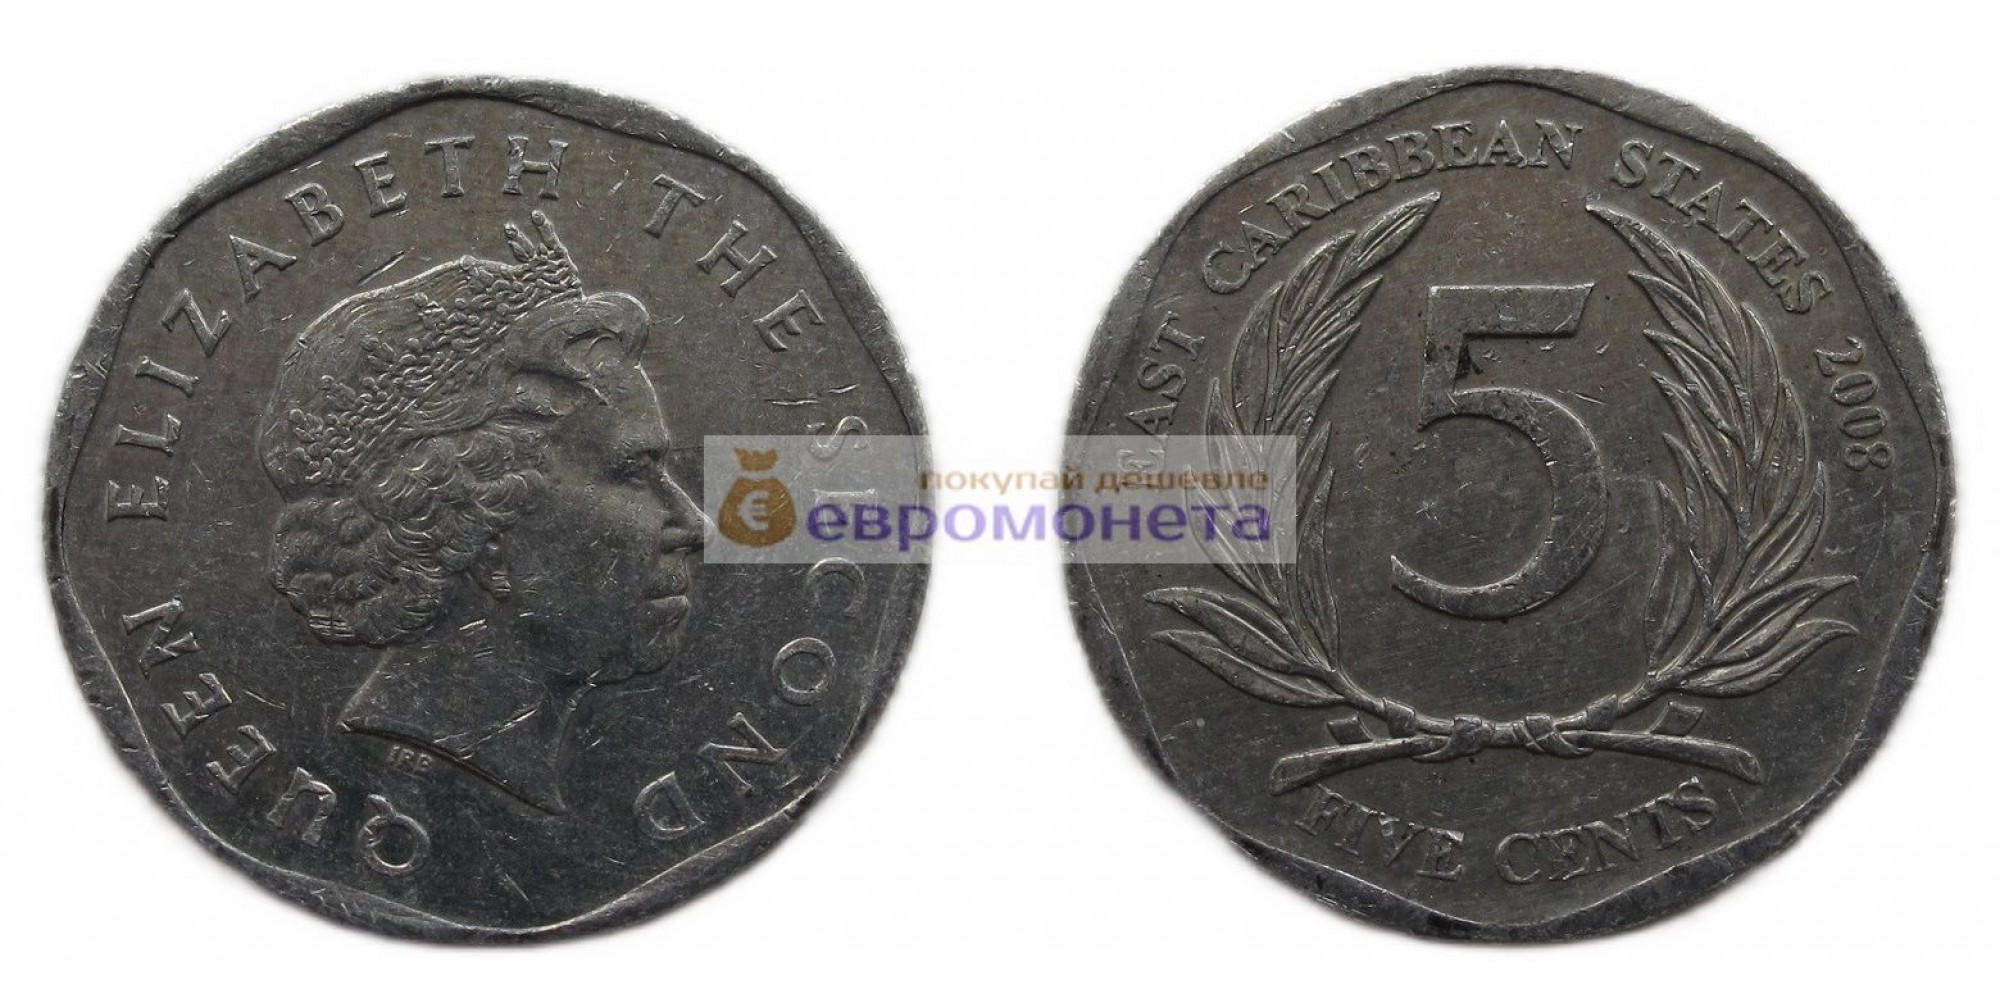 Восточные Карибы 5 центов 2008 год. Королева Елизавета II